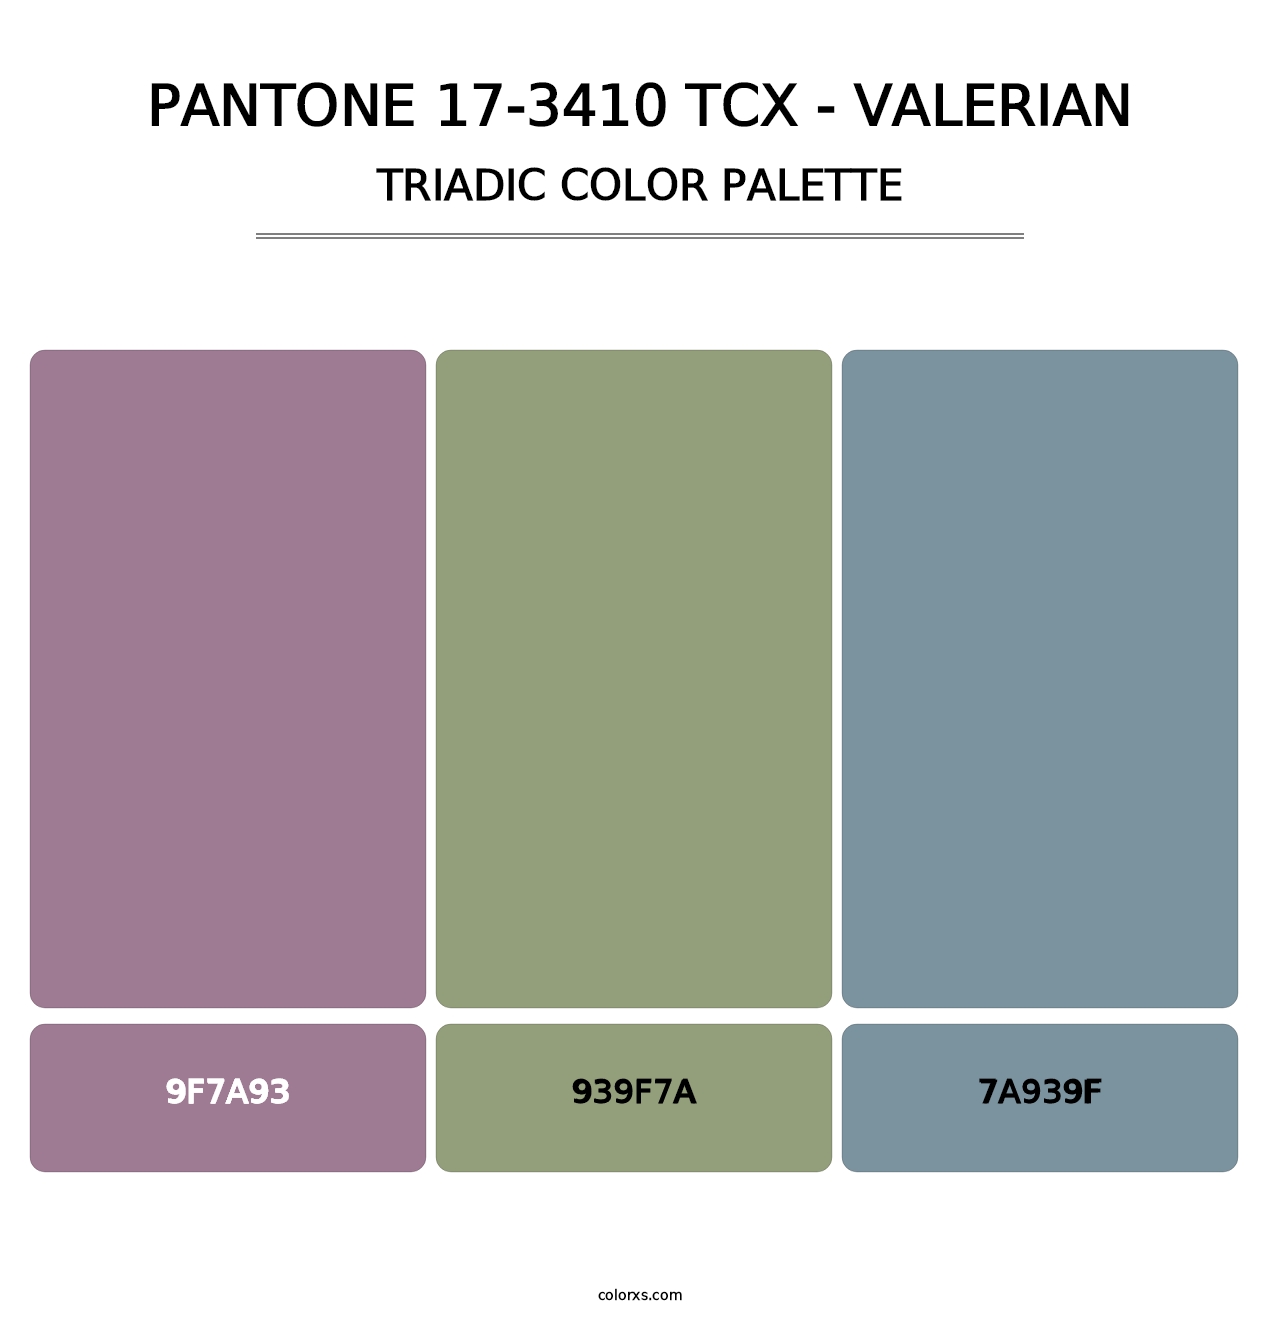 PANTONE 17-3410 TCX - Valerian - Triadic Color Palette